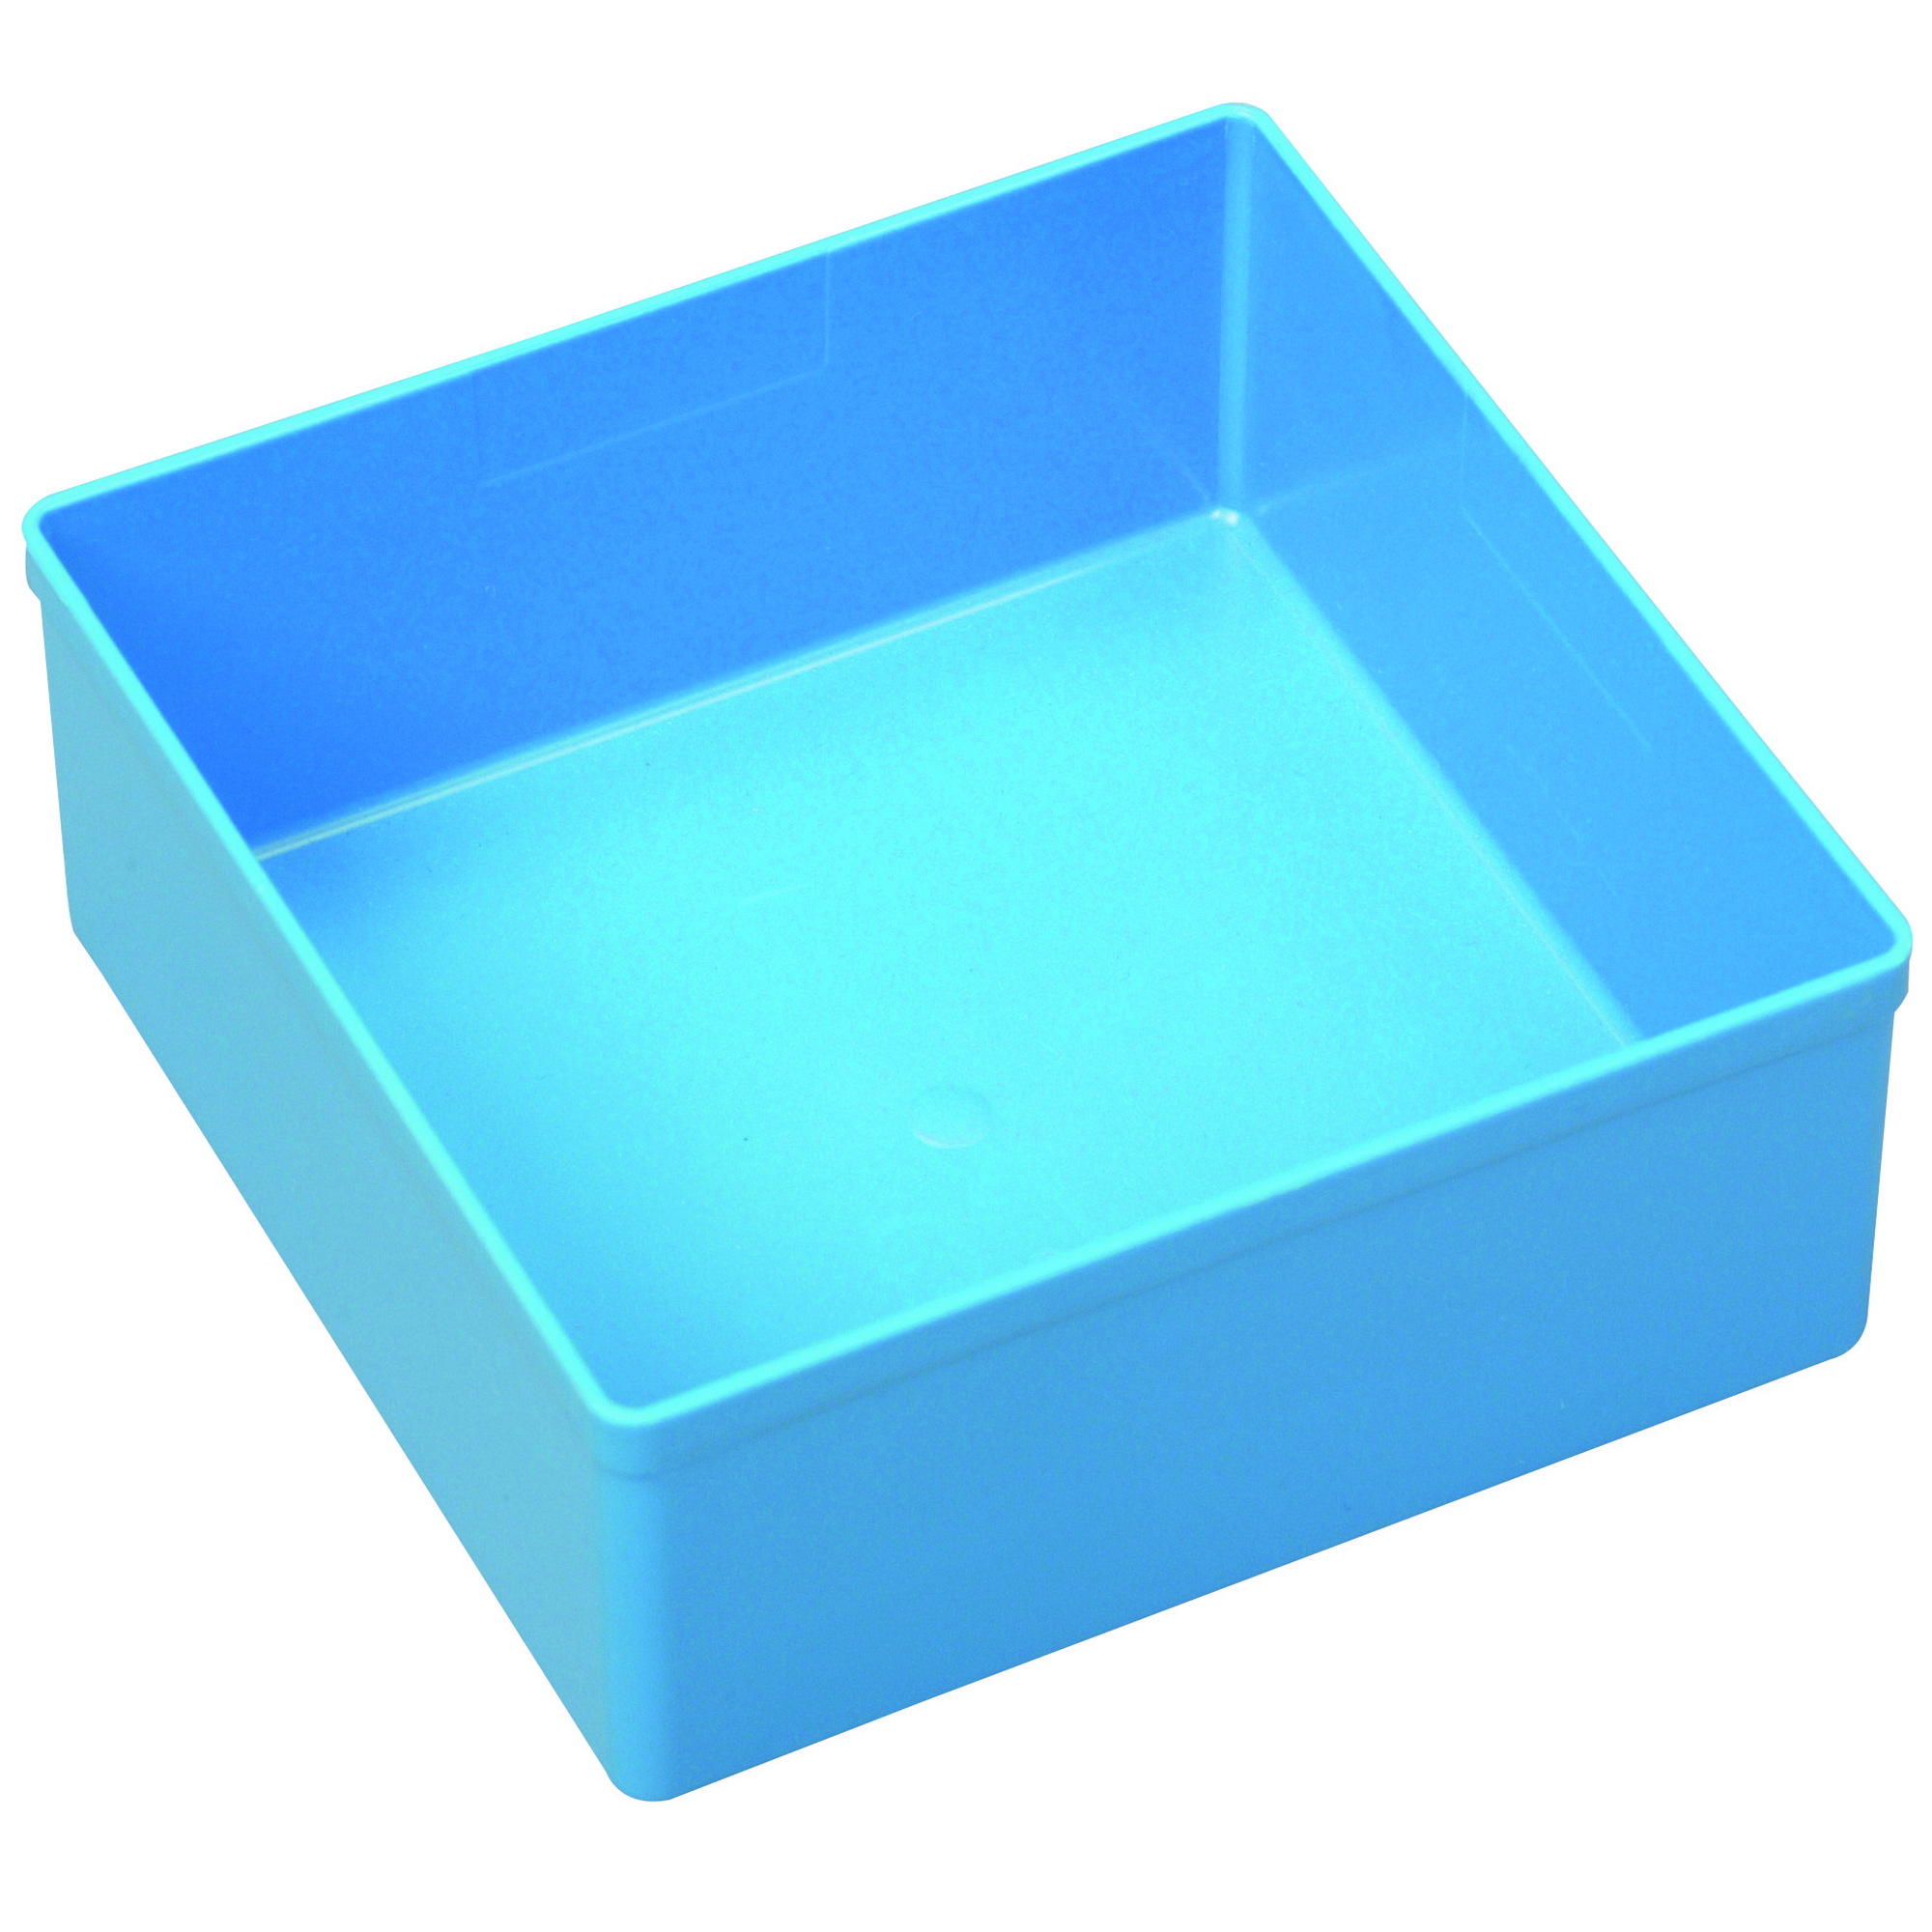 EuroPlus Einsatzbox 'Insert 45/3' Größe 3 blau 10,8 x 10,8 x 4,5 cm + product picture